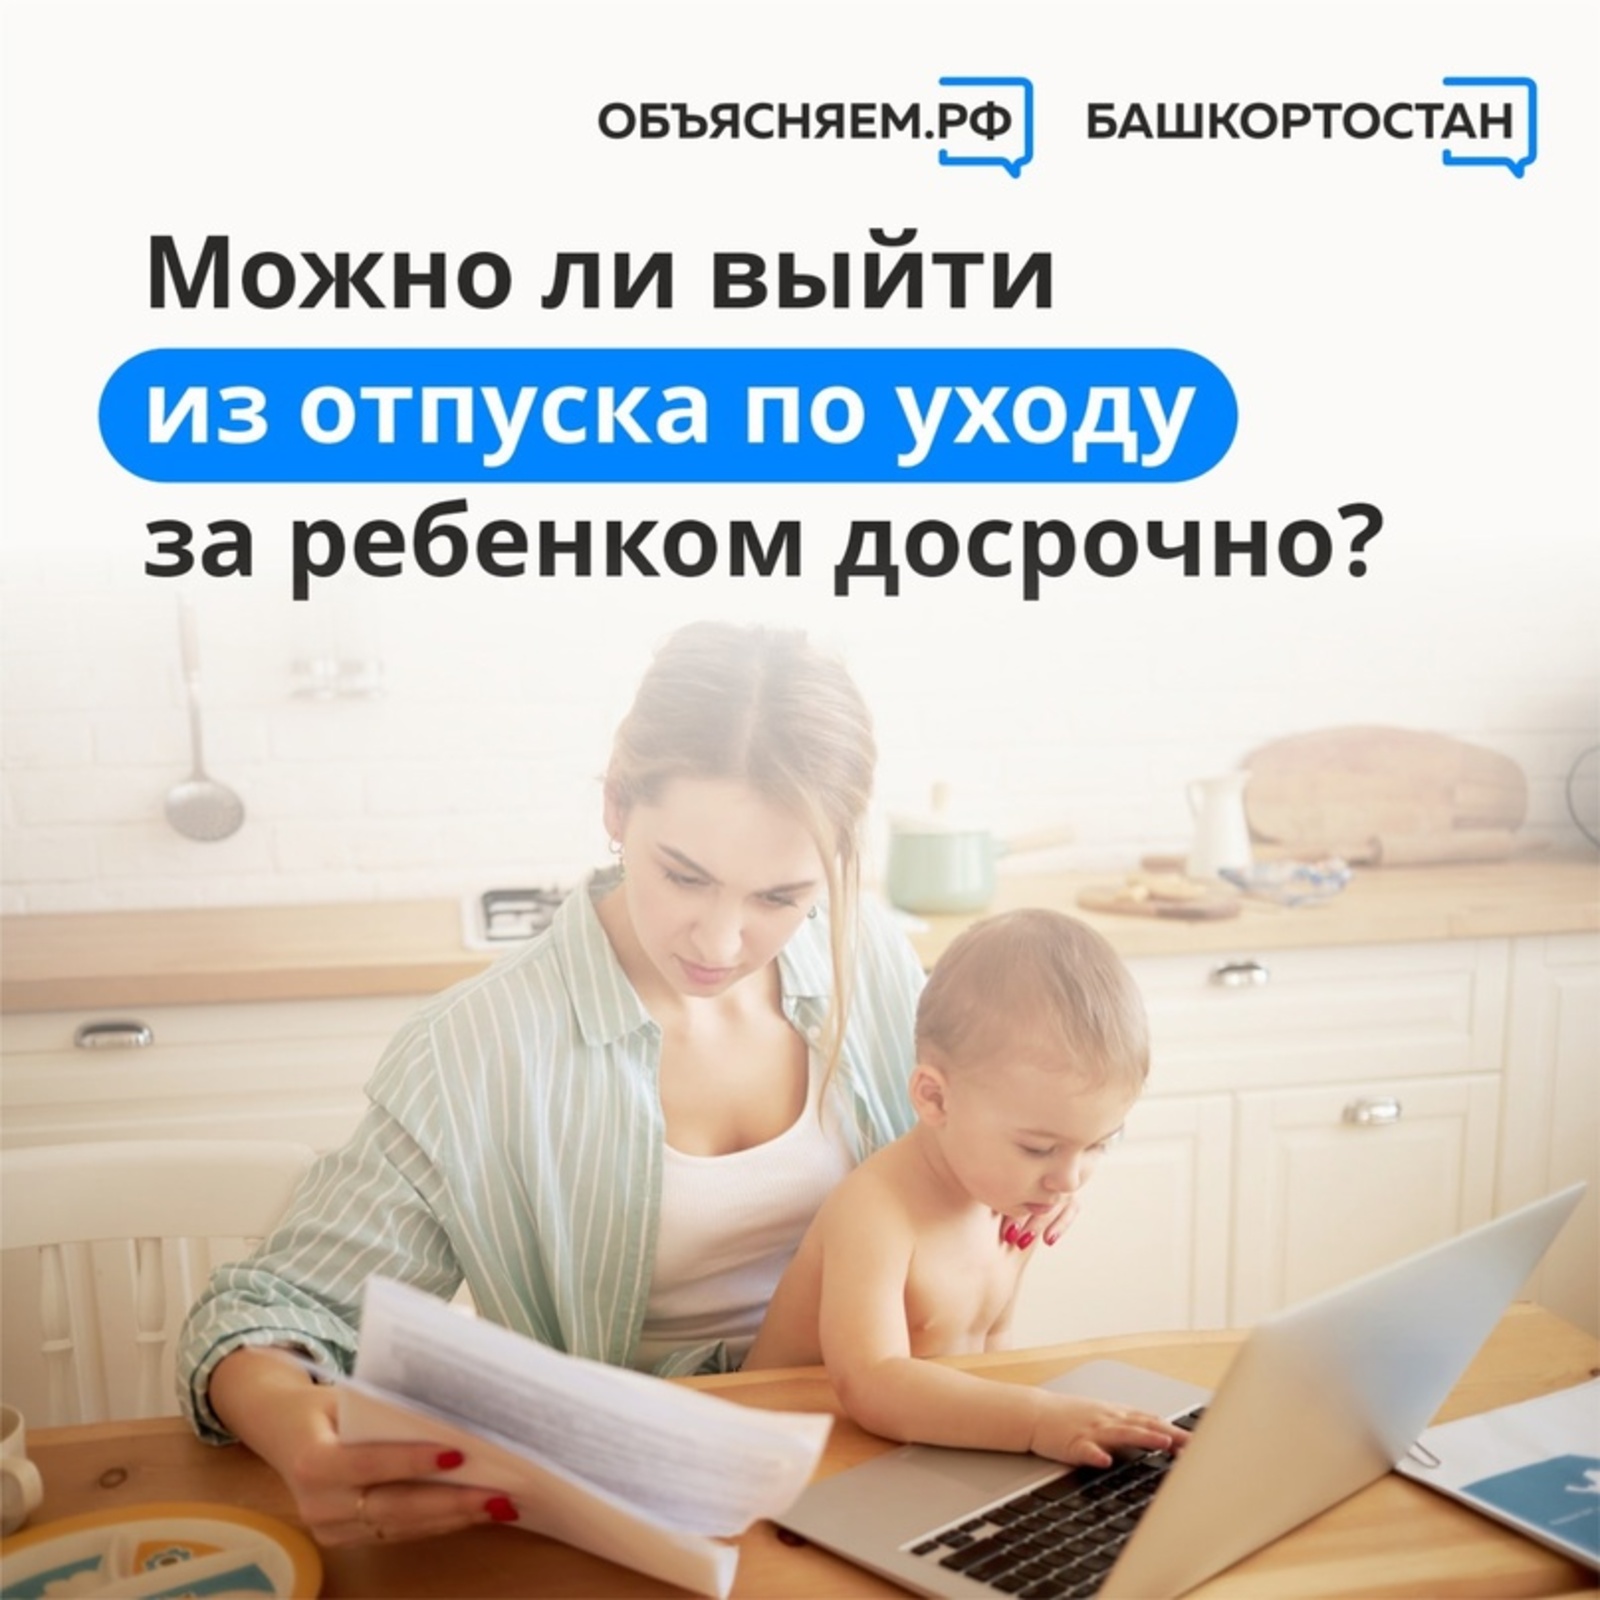 Объясняем. Башкортостан, пост: Можно ли выйти из отпуска по уходу за ребенком до трех лет досрочно?